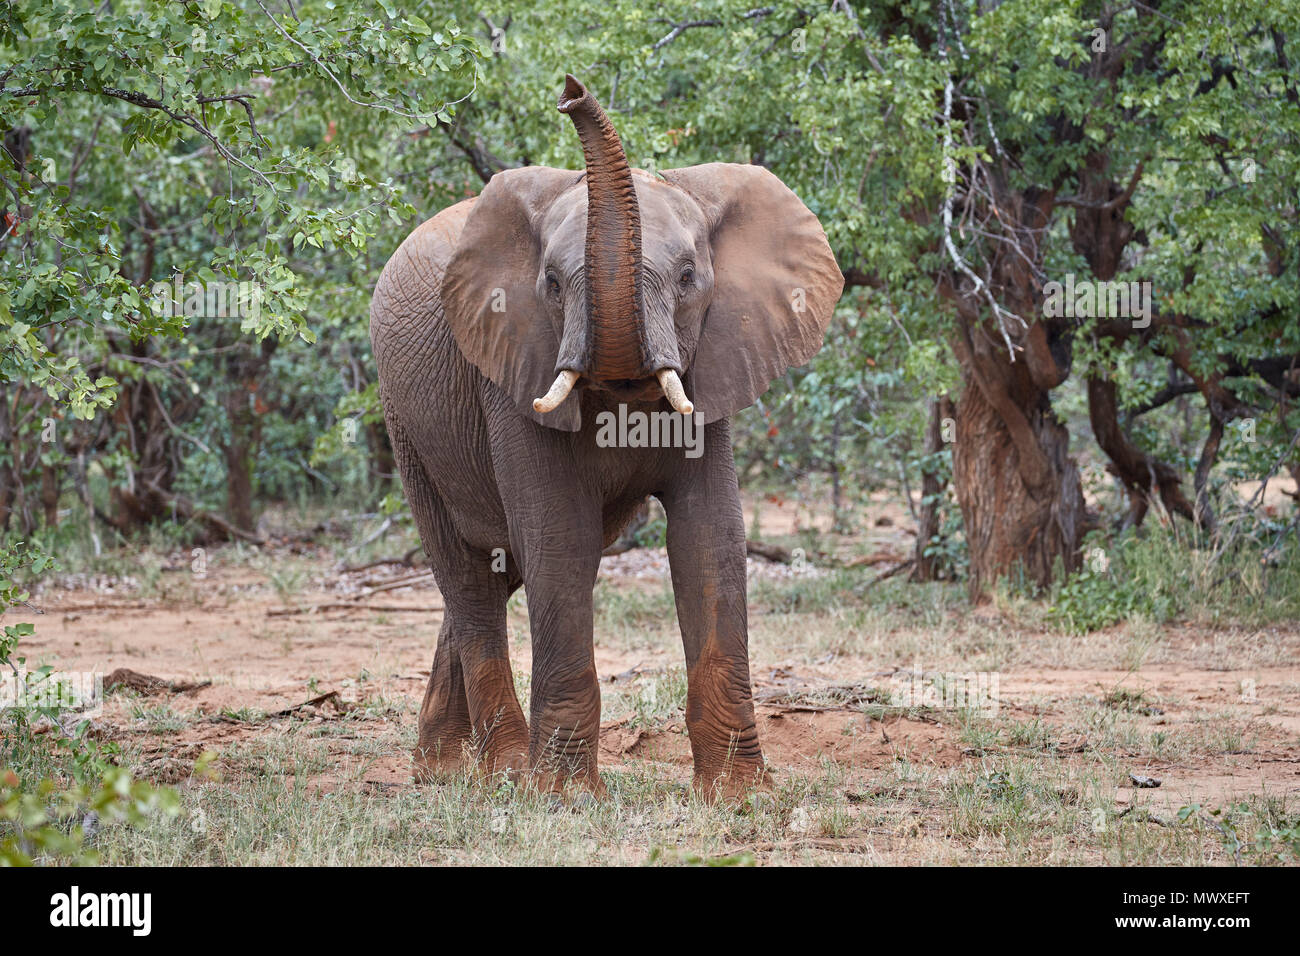 L'éléphant africain (Loxodonta africana) avec son tronc soulevé, Kruger National Park, Afrique du Sud, l'Afrique Banque D'Images